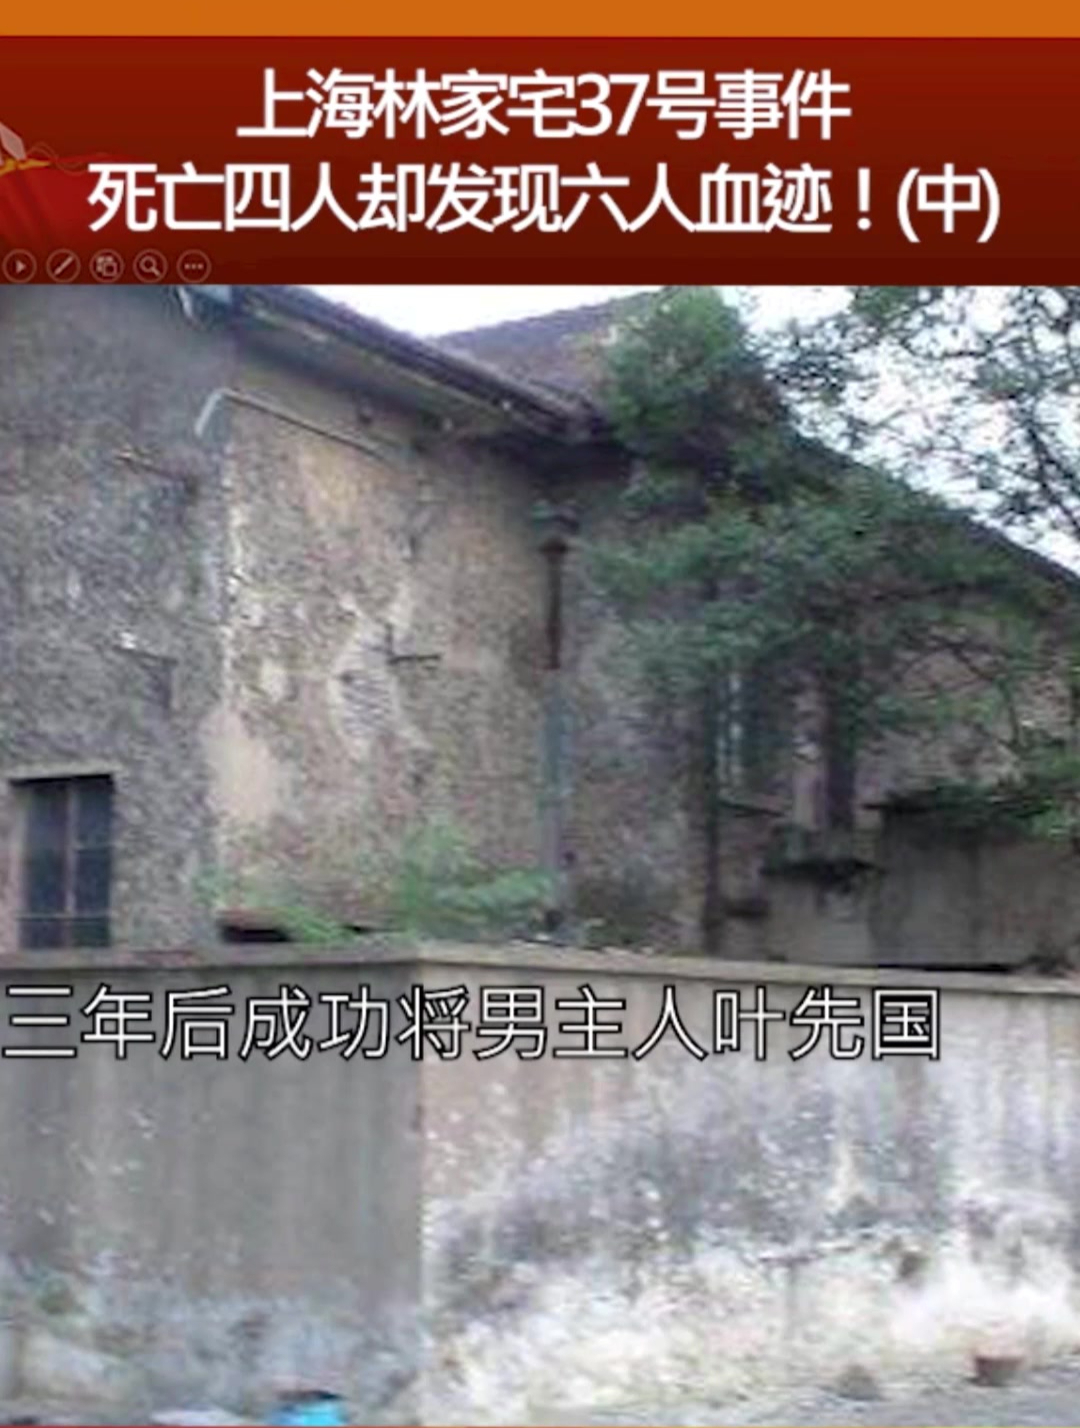 上海林家宅37号事件图片